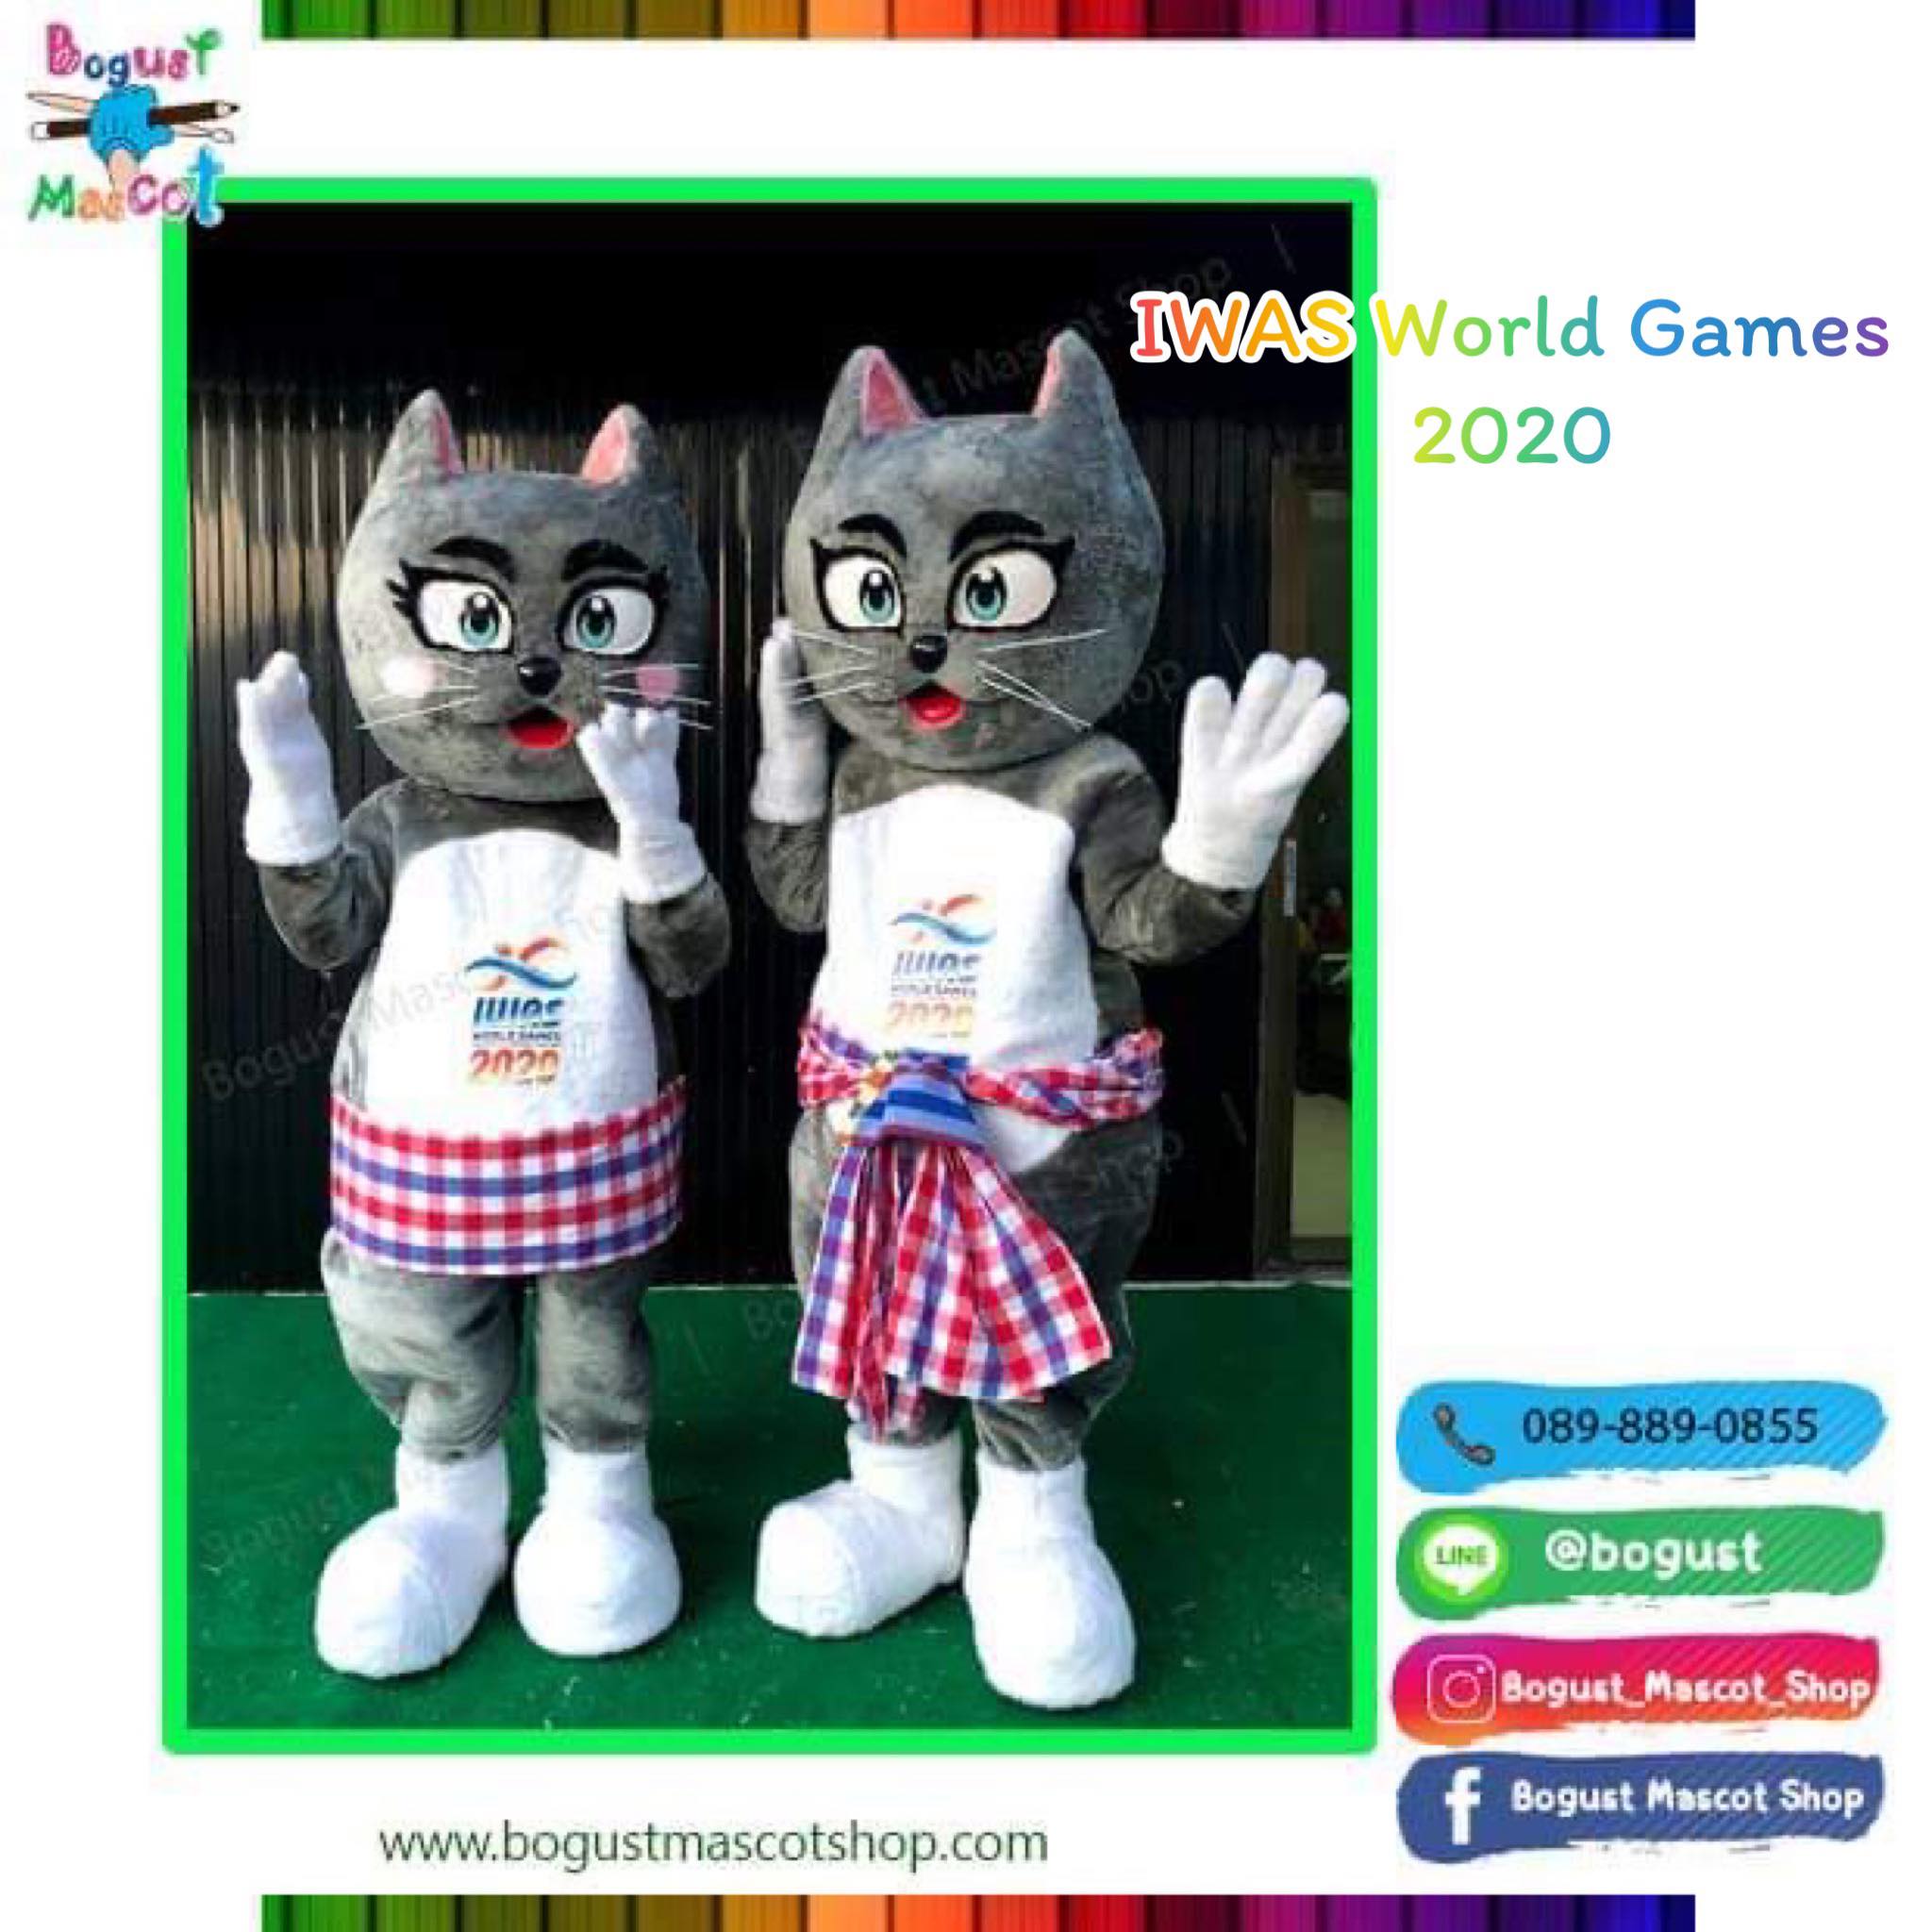 มาสคอต (Mascot) ---> แมว การแข่งขัน IWAS WORLD GAMES 2020